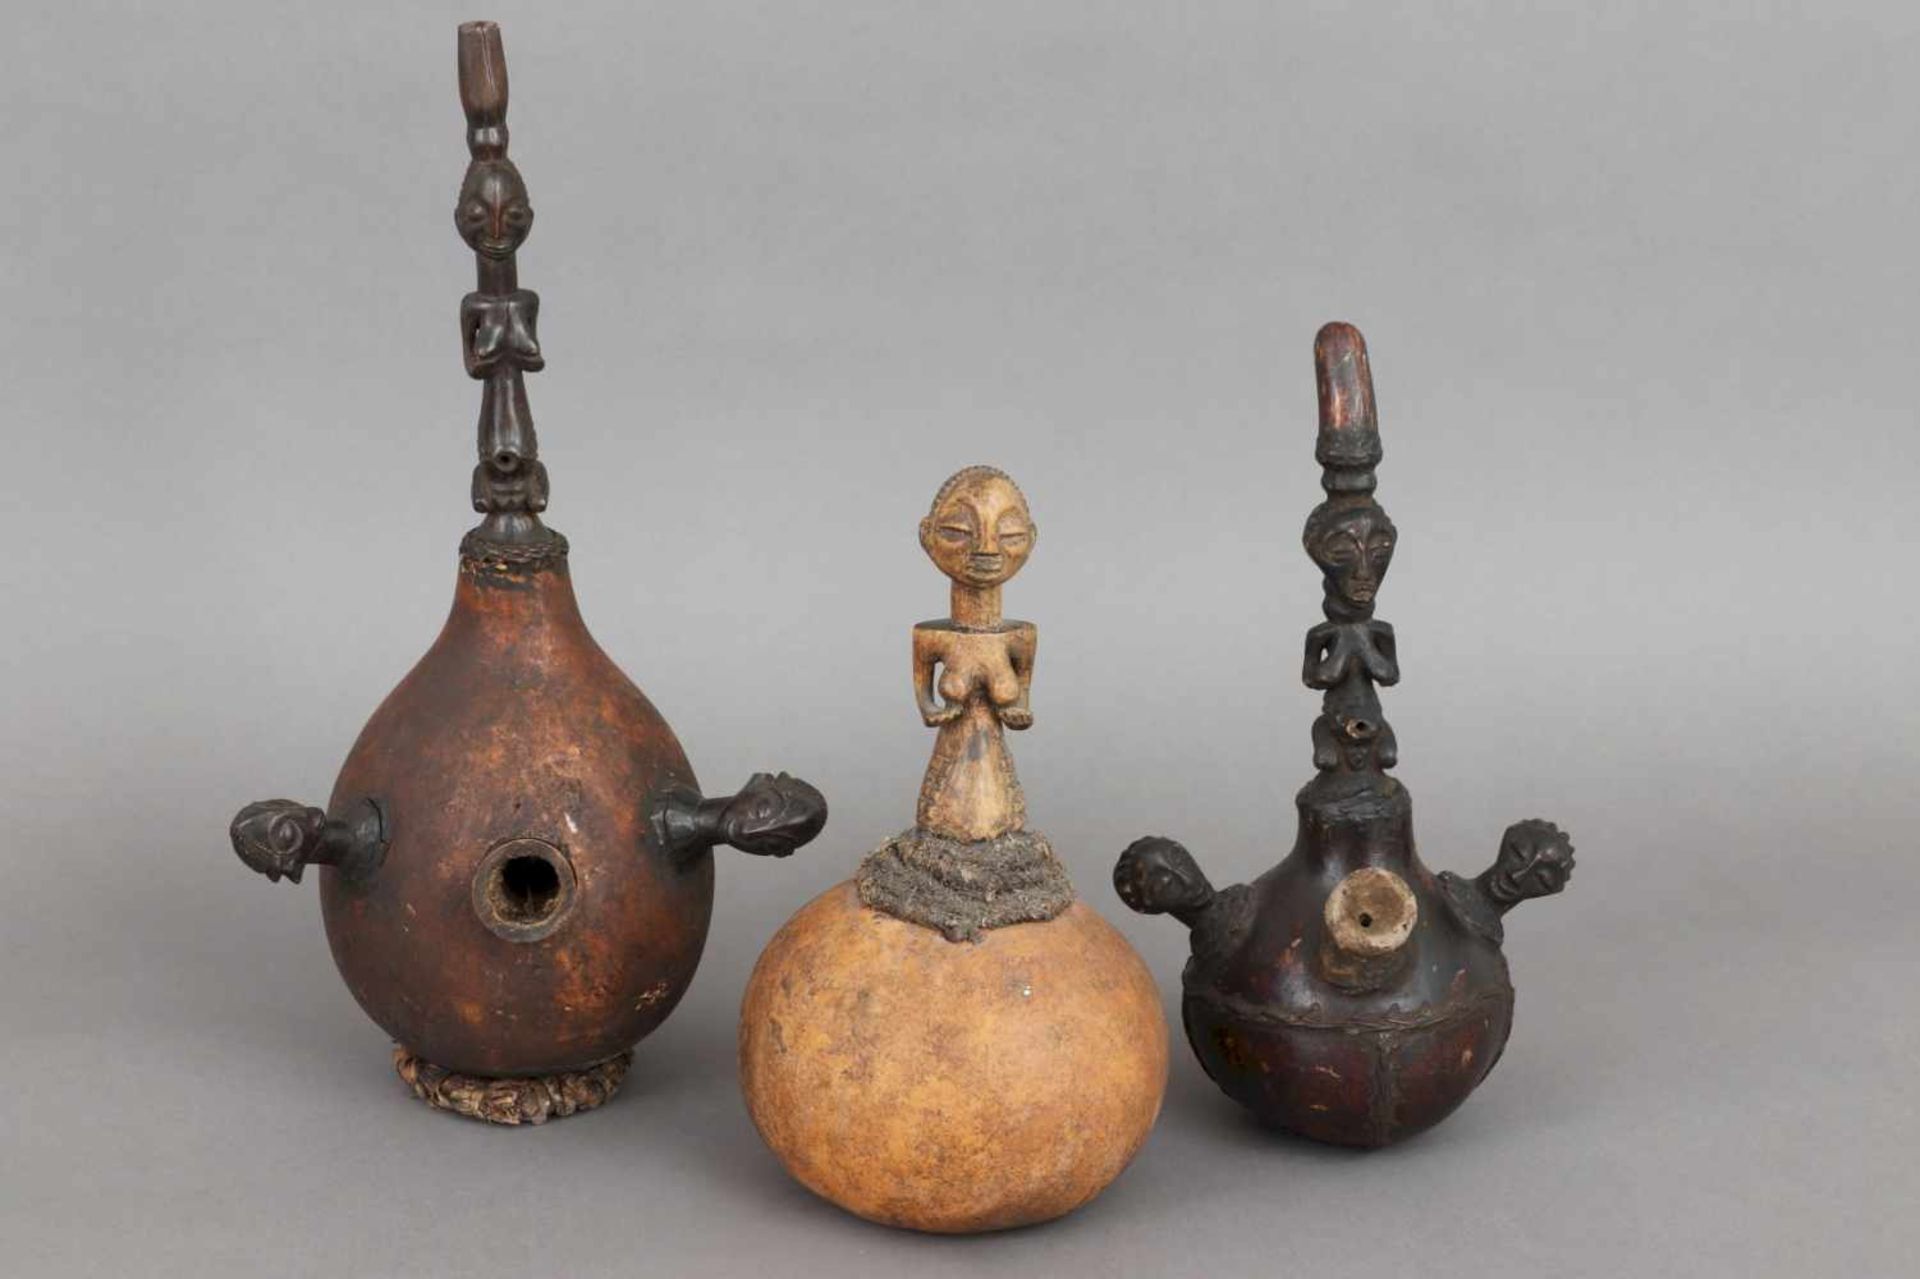 3 afrikanische Kalebassen-Figuren/Gefäße bzw. Pfeifen mit geschnitztem Holzbesatz (Köpfe und